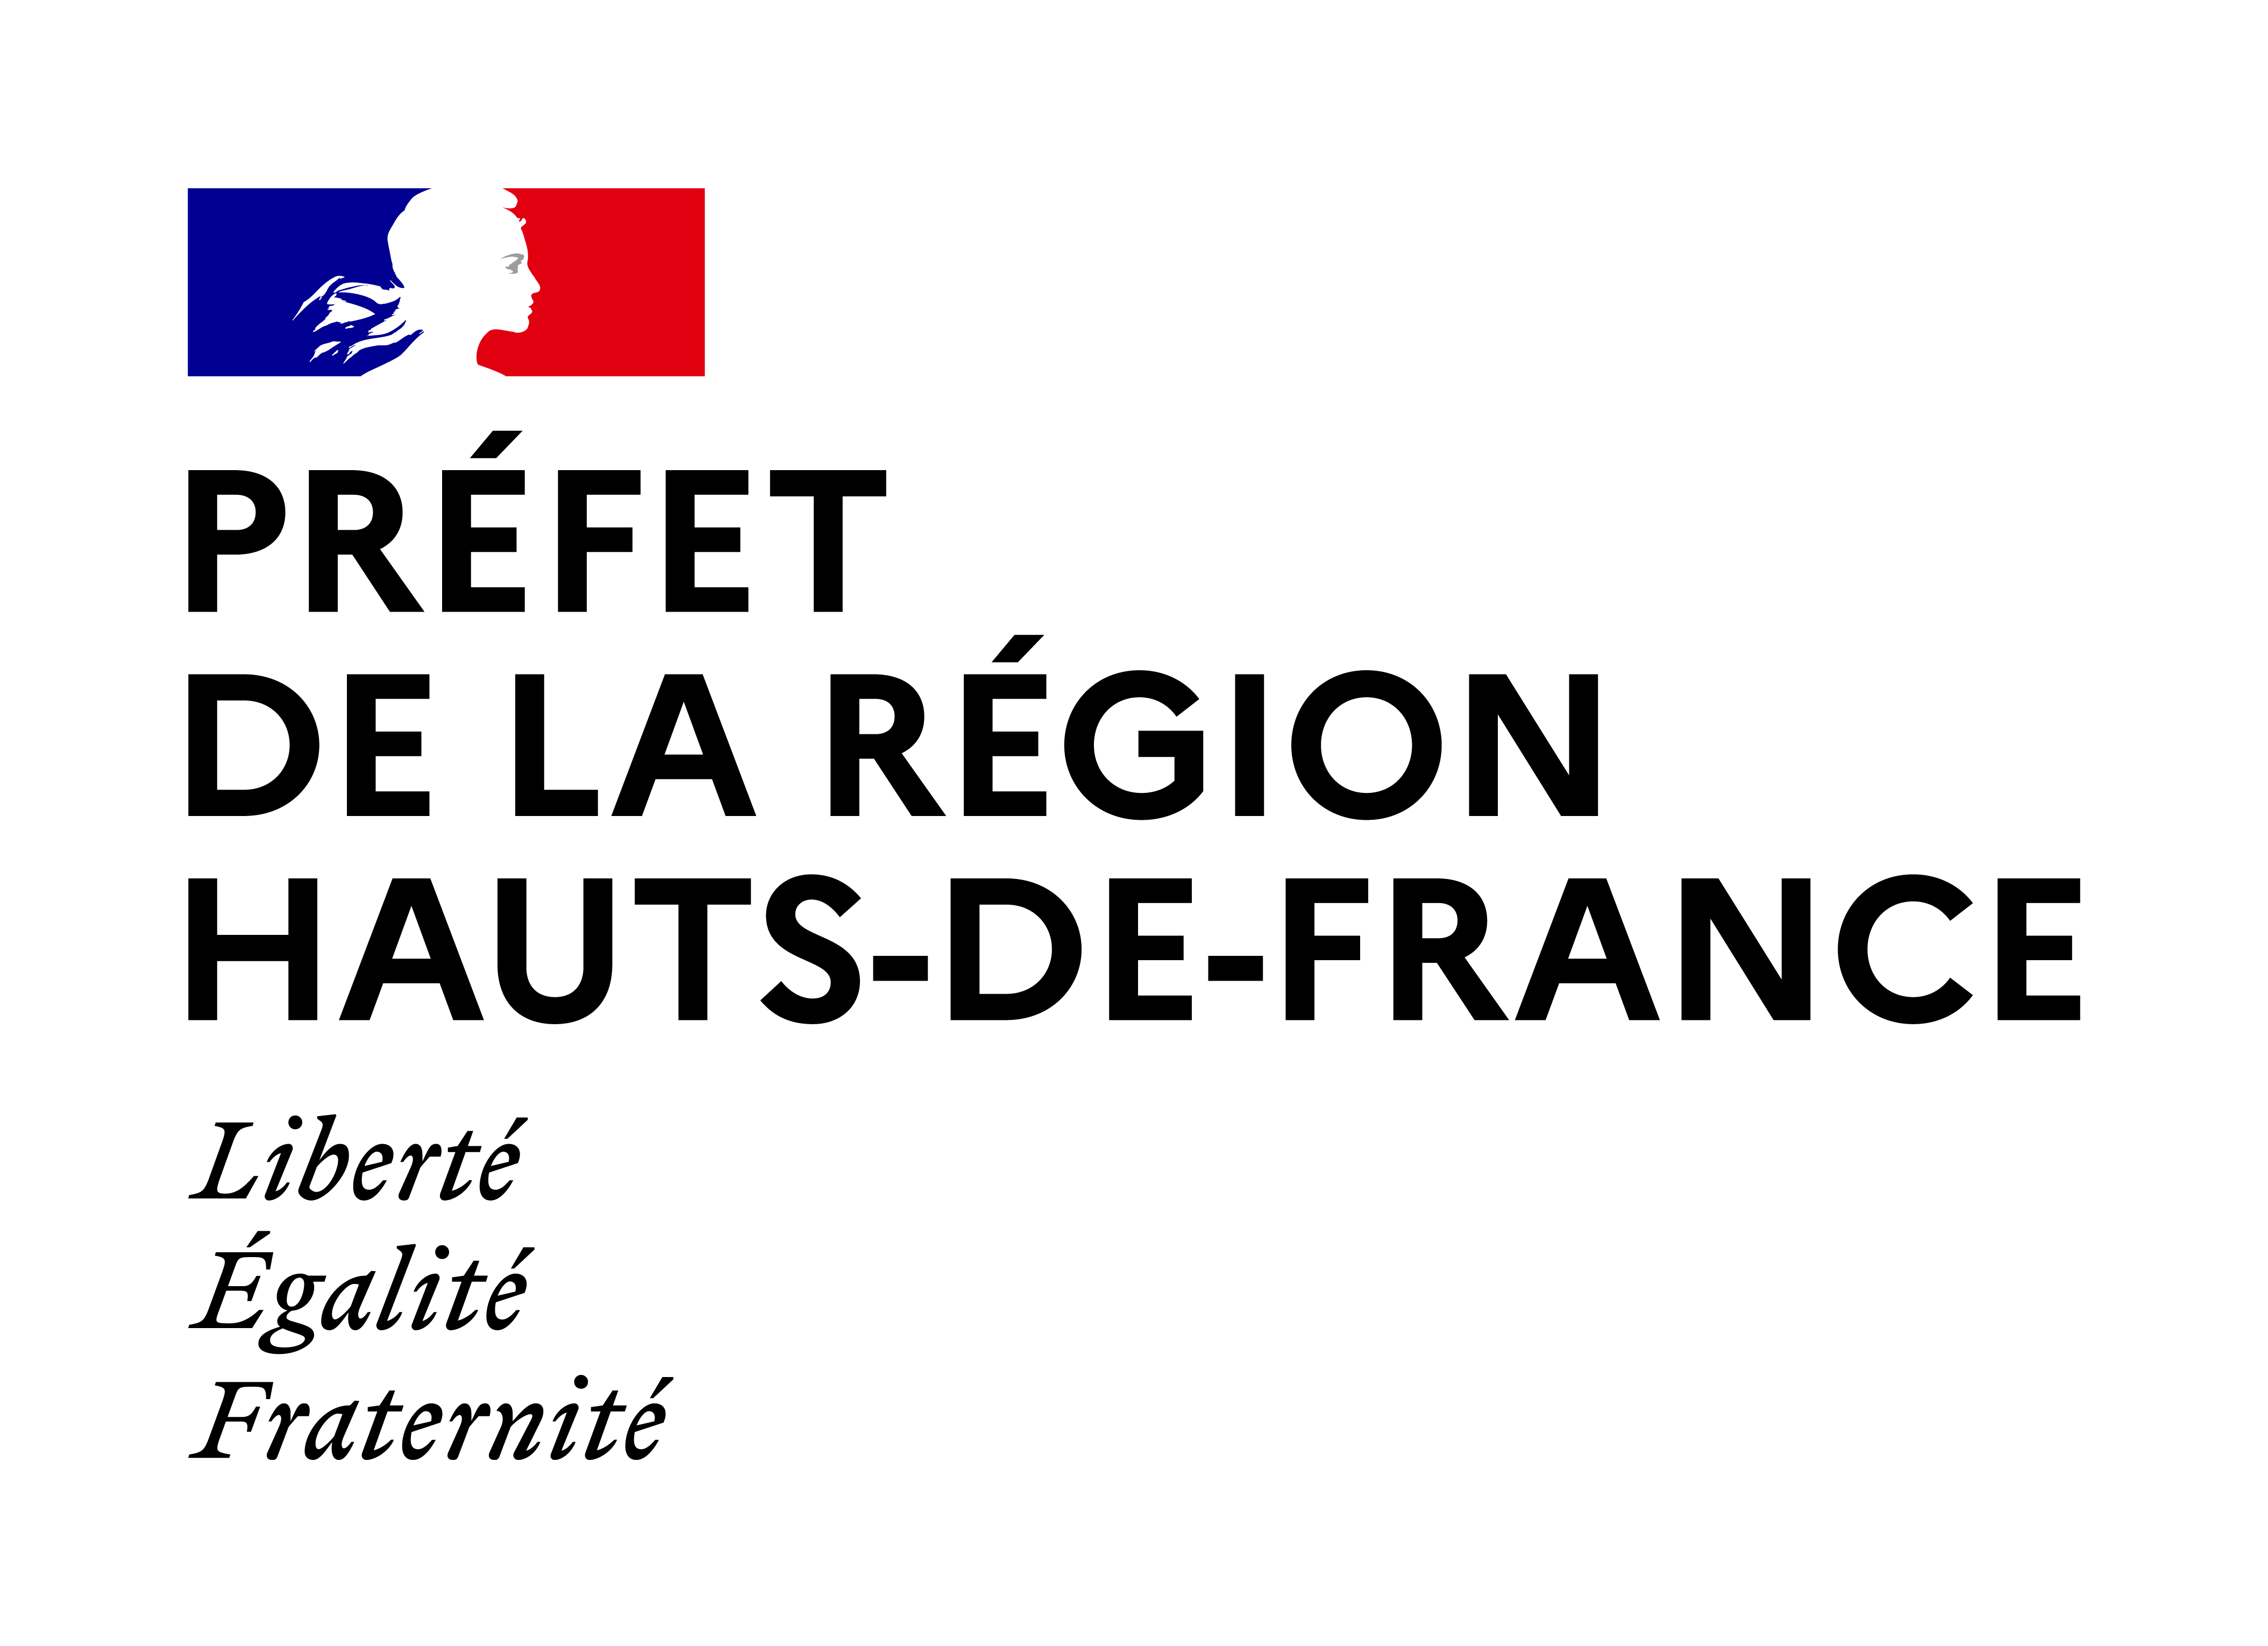 Logo Région Hauts-de-France